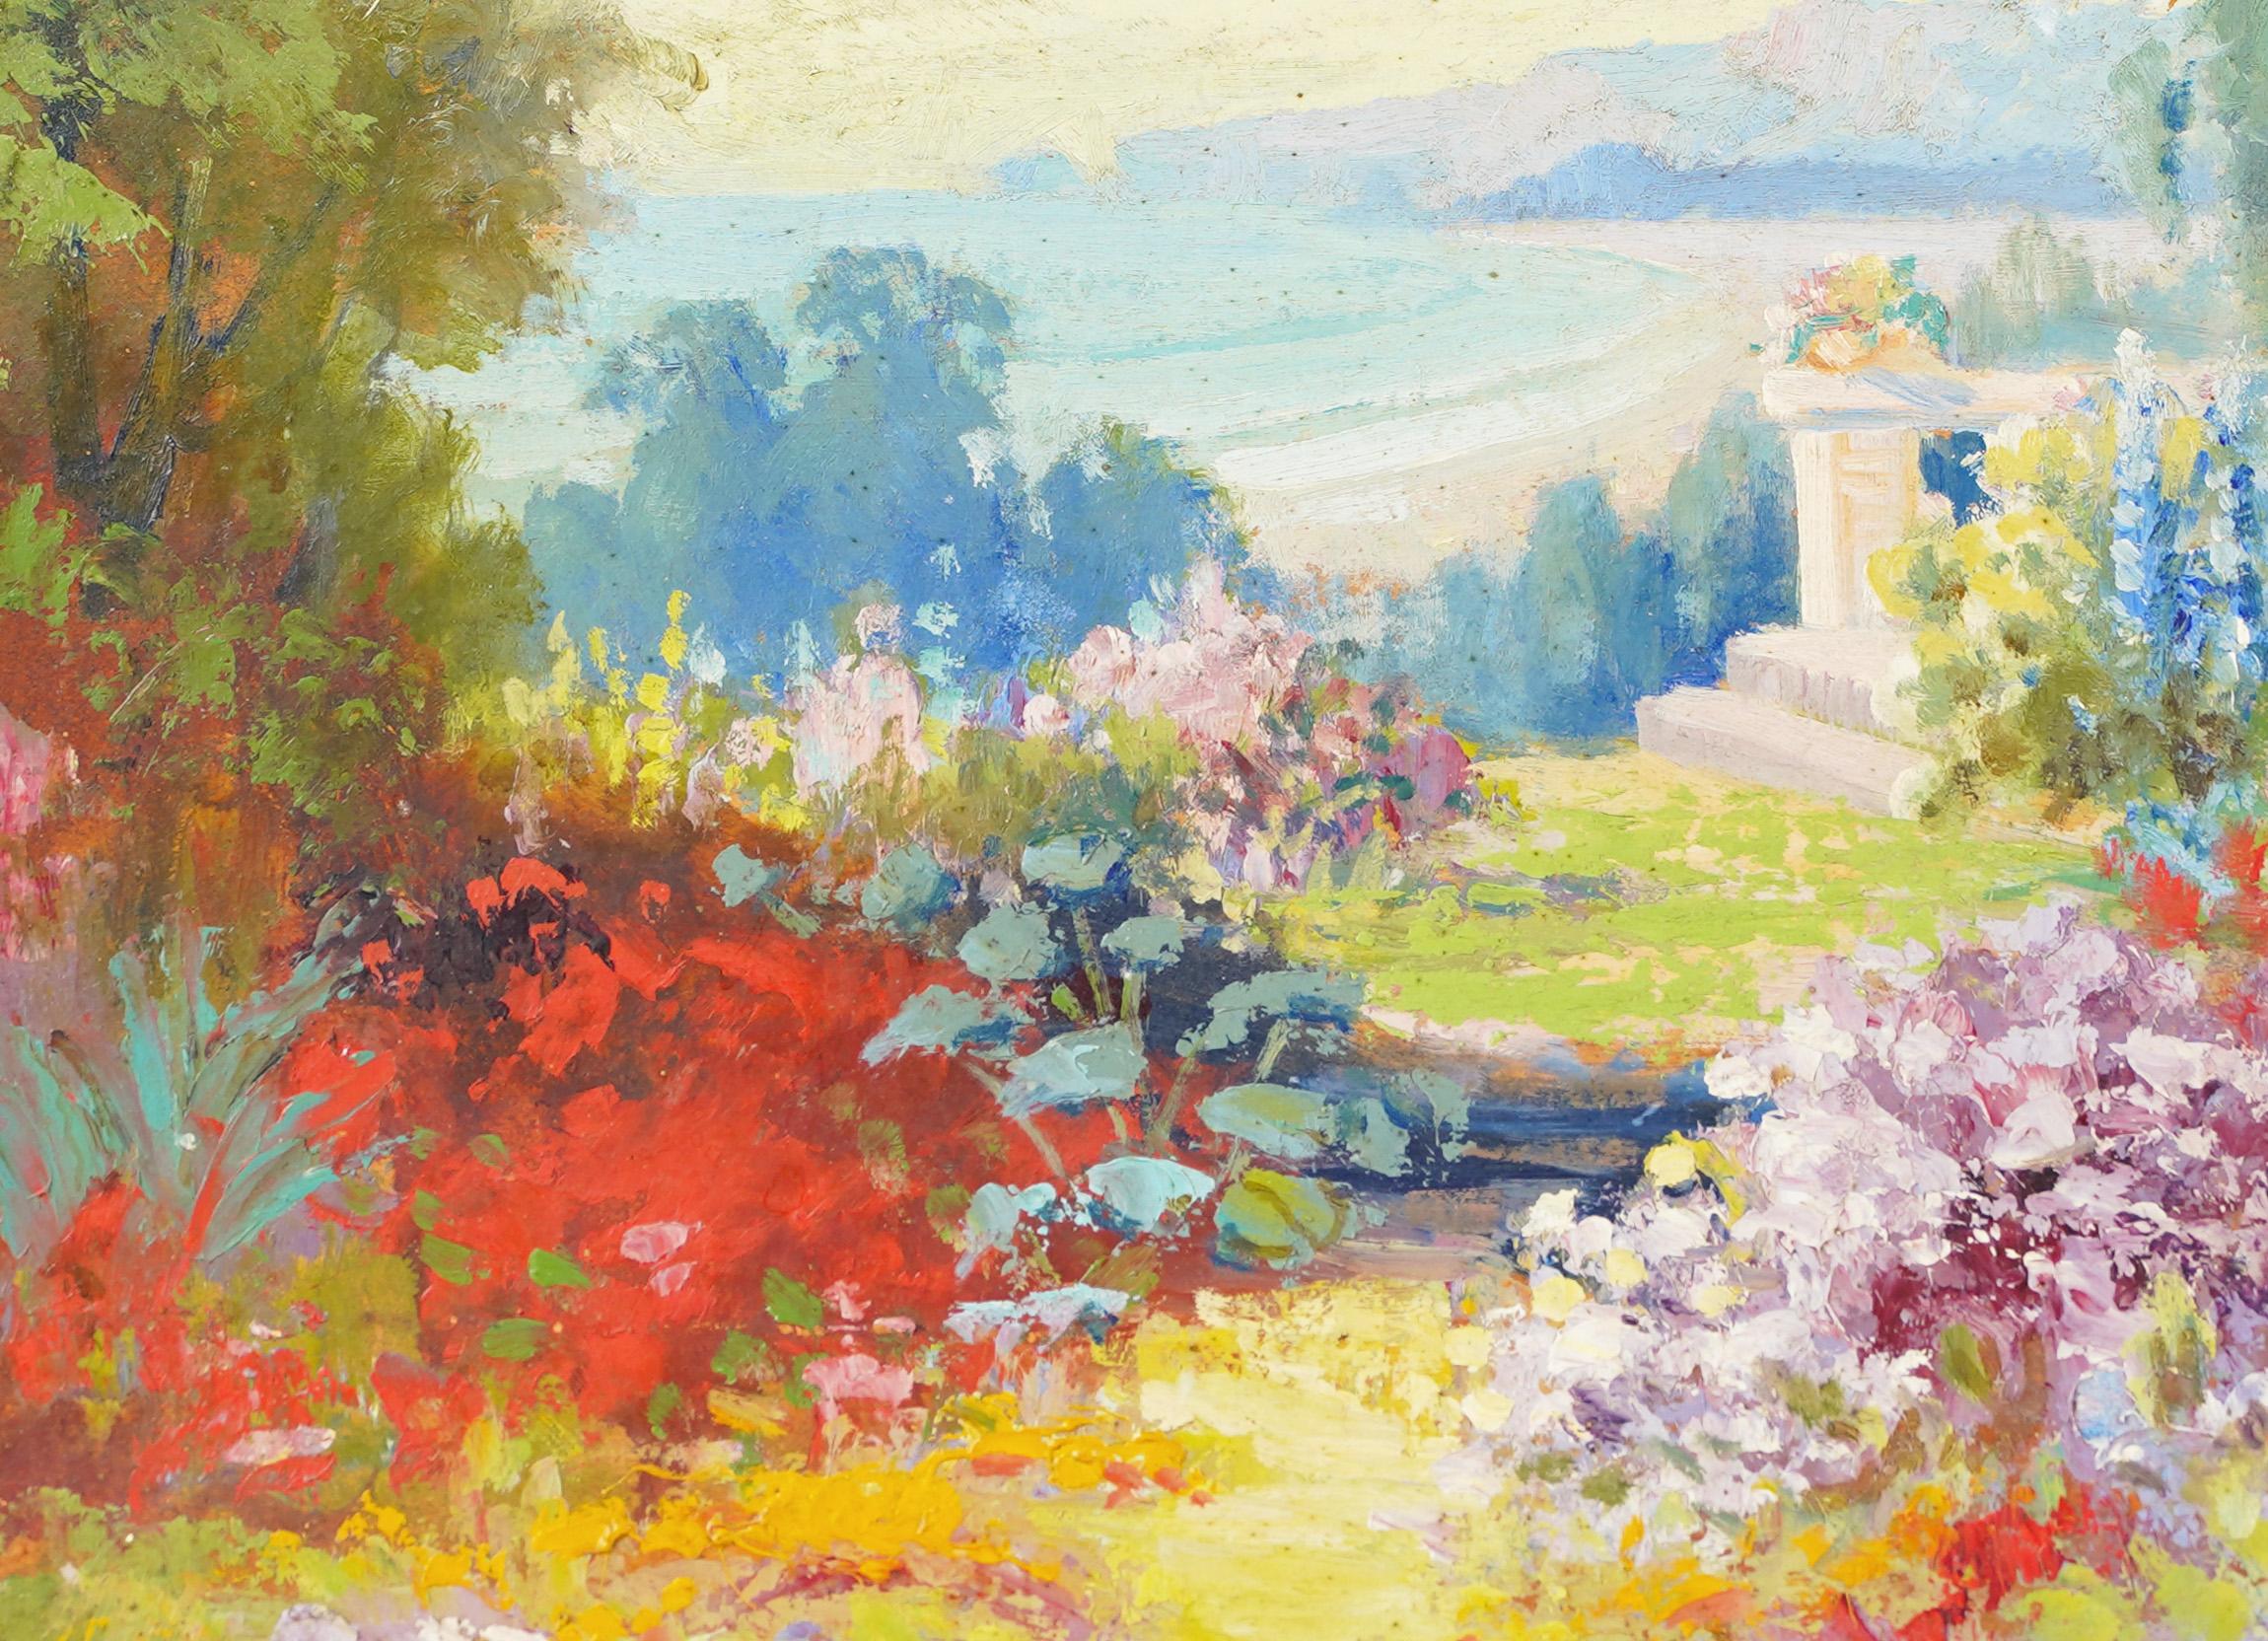 Antikes amerikanisches impressionistisches Blumenlandschaftsgemälde von Arthur William Best (1859 - 1935).  Öl auf Karton.  Unterschrieben.  Gerahmt.  Bildgröße, 14L x 10H.